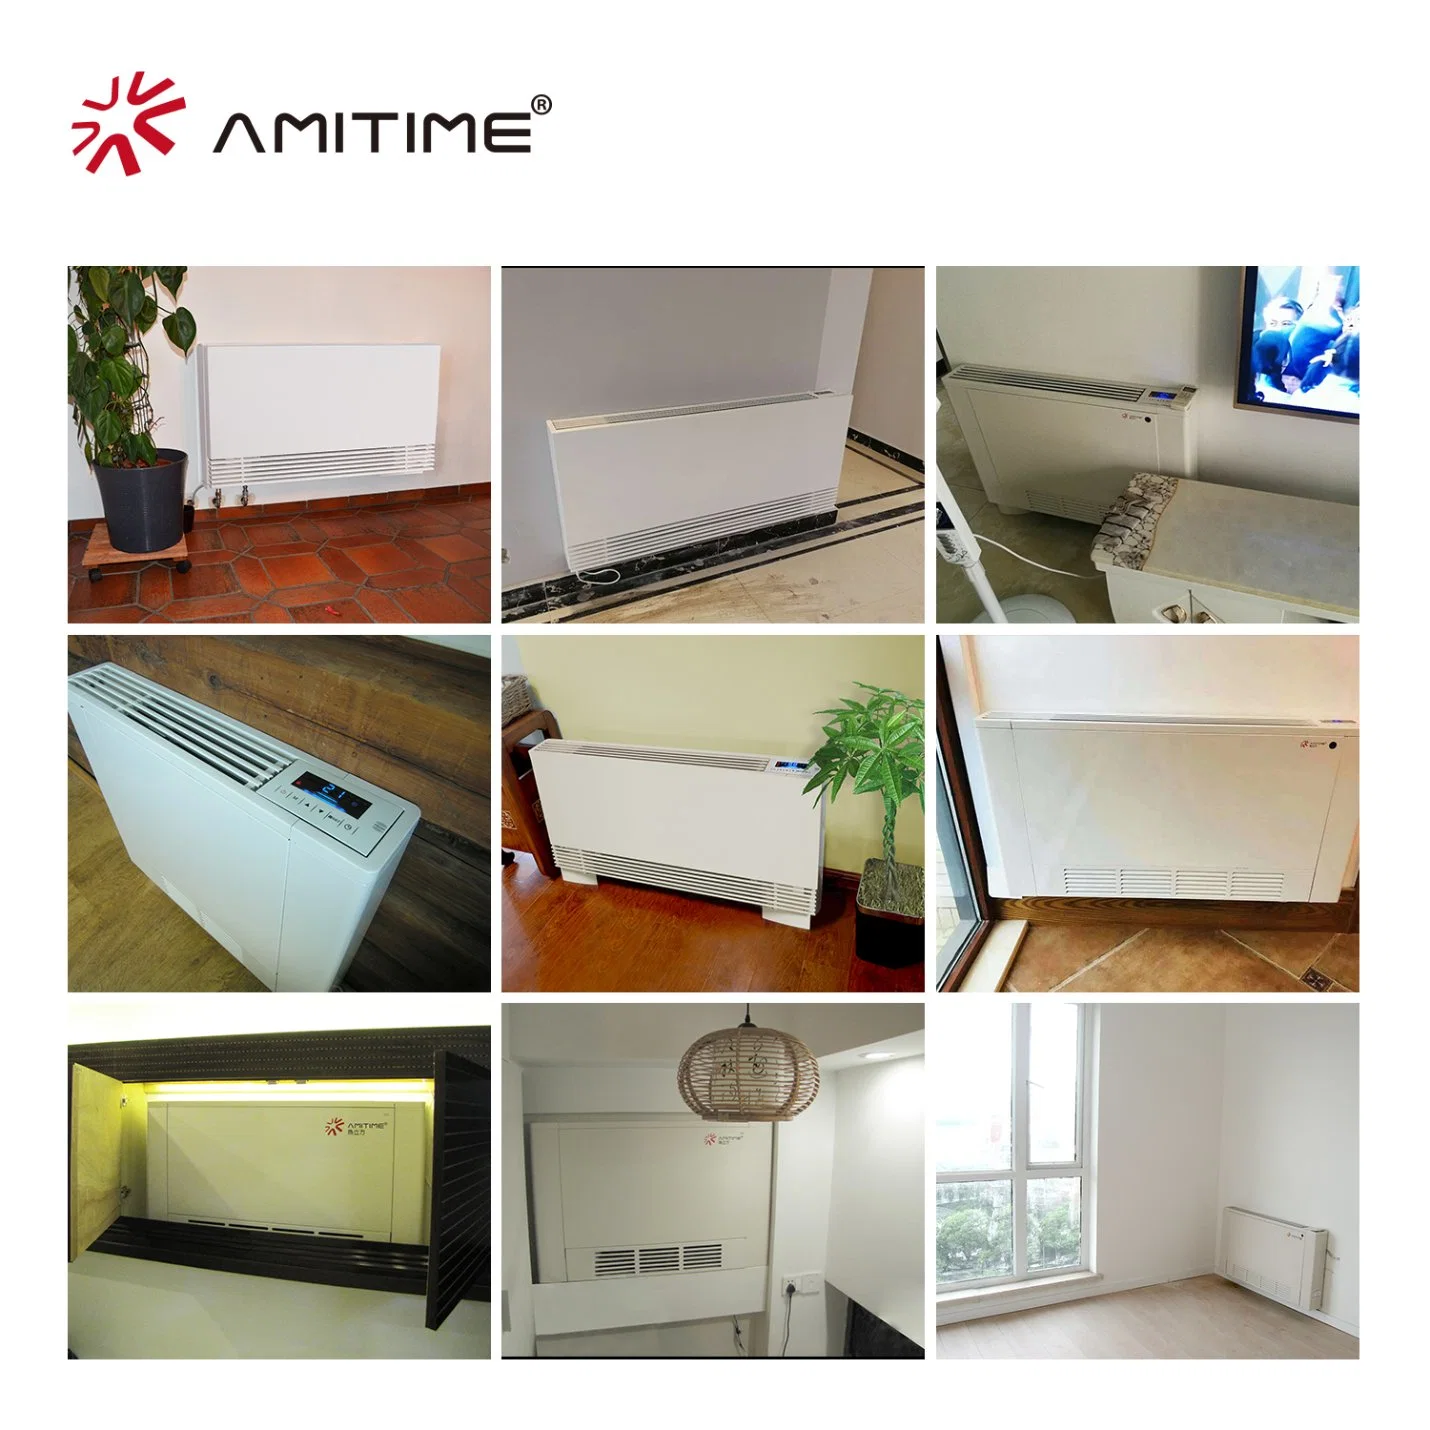 El agua RoHS aprobado Amitime caja de cartón en la pared del sistema de refrigeración